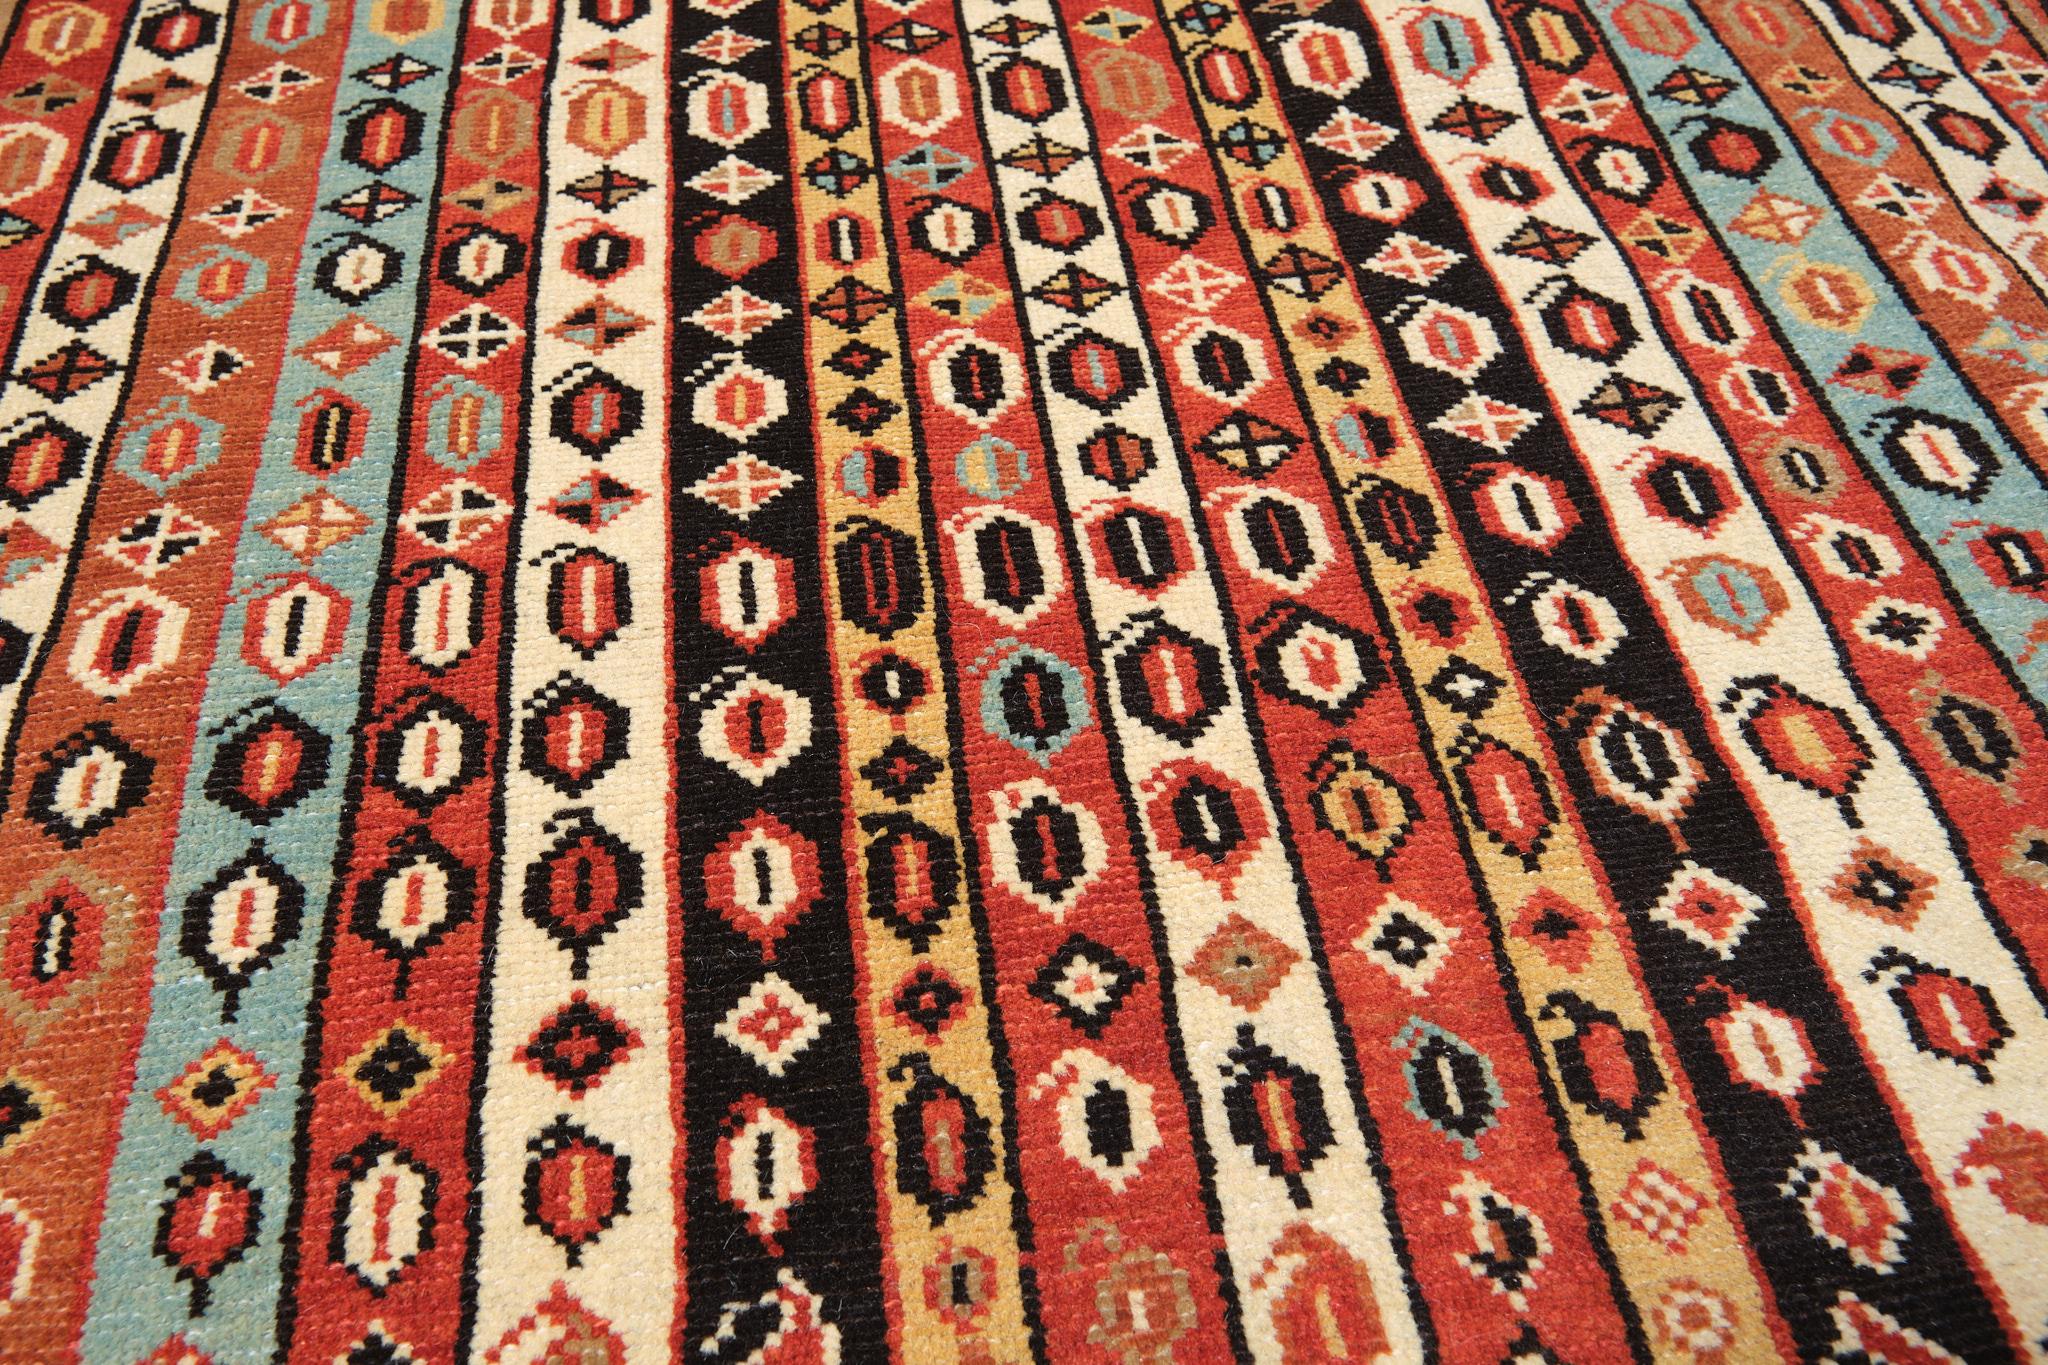 Vegetable Dyed Ararat Rugs Karabagh Prayer Rug with Vertical Stripes Revival Carpet Natural Dye For Sale